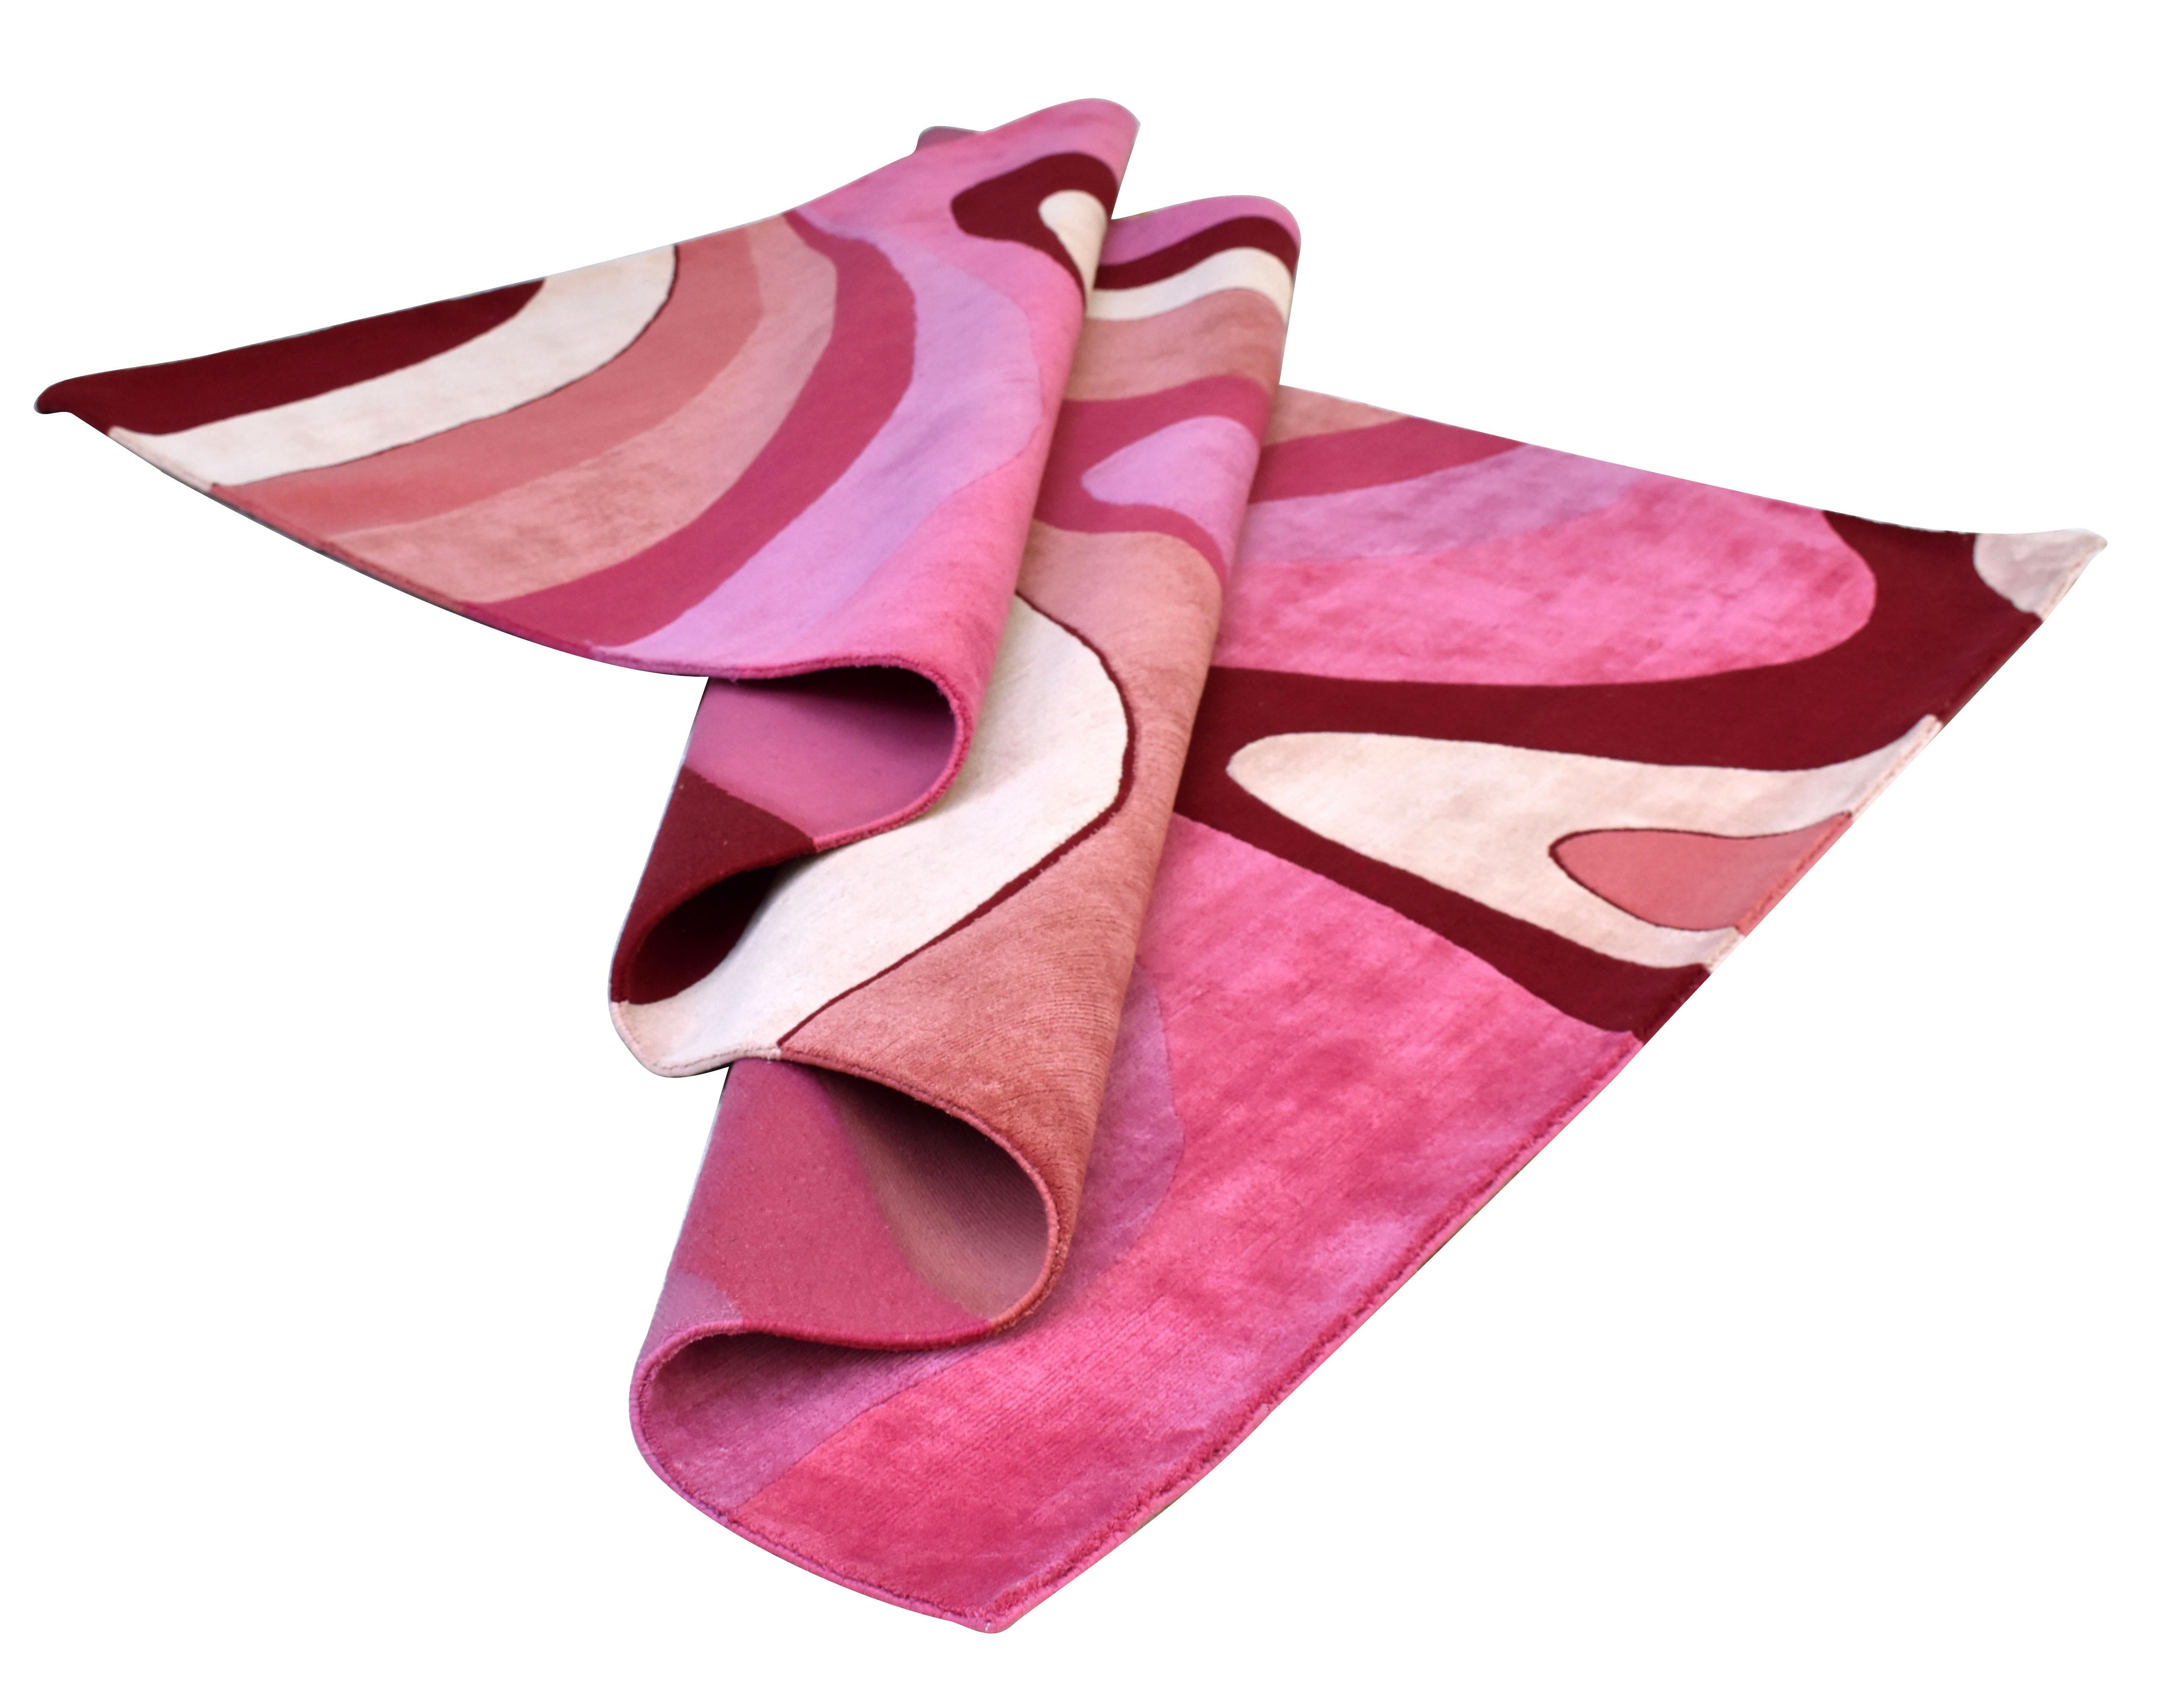 Sasha Bikoff Collection Modern Area Rug Pink Colors, 